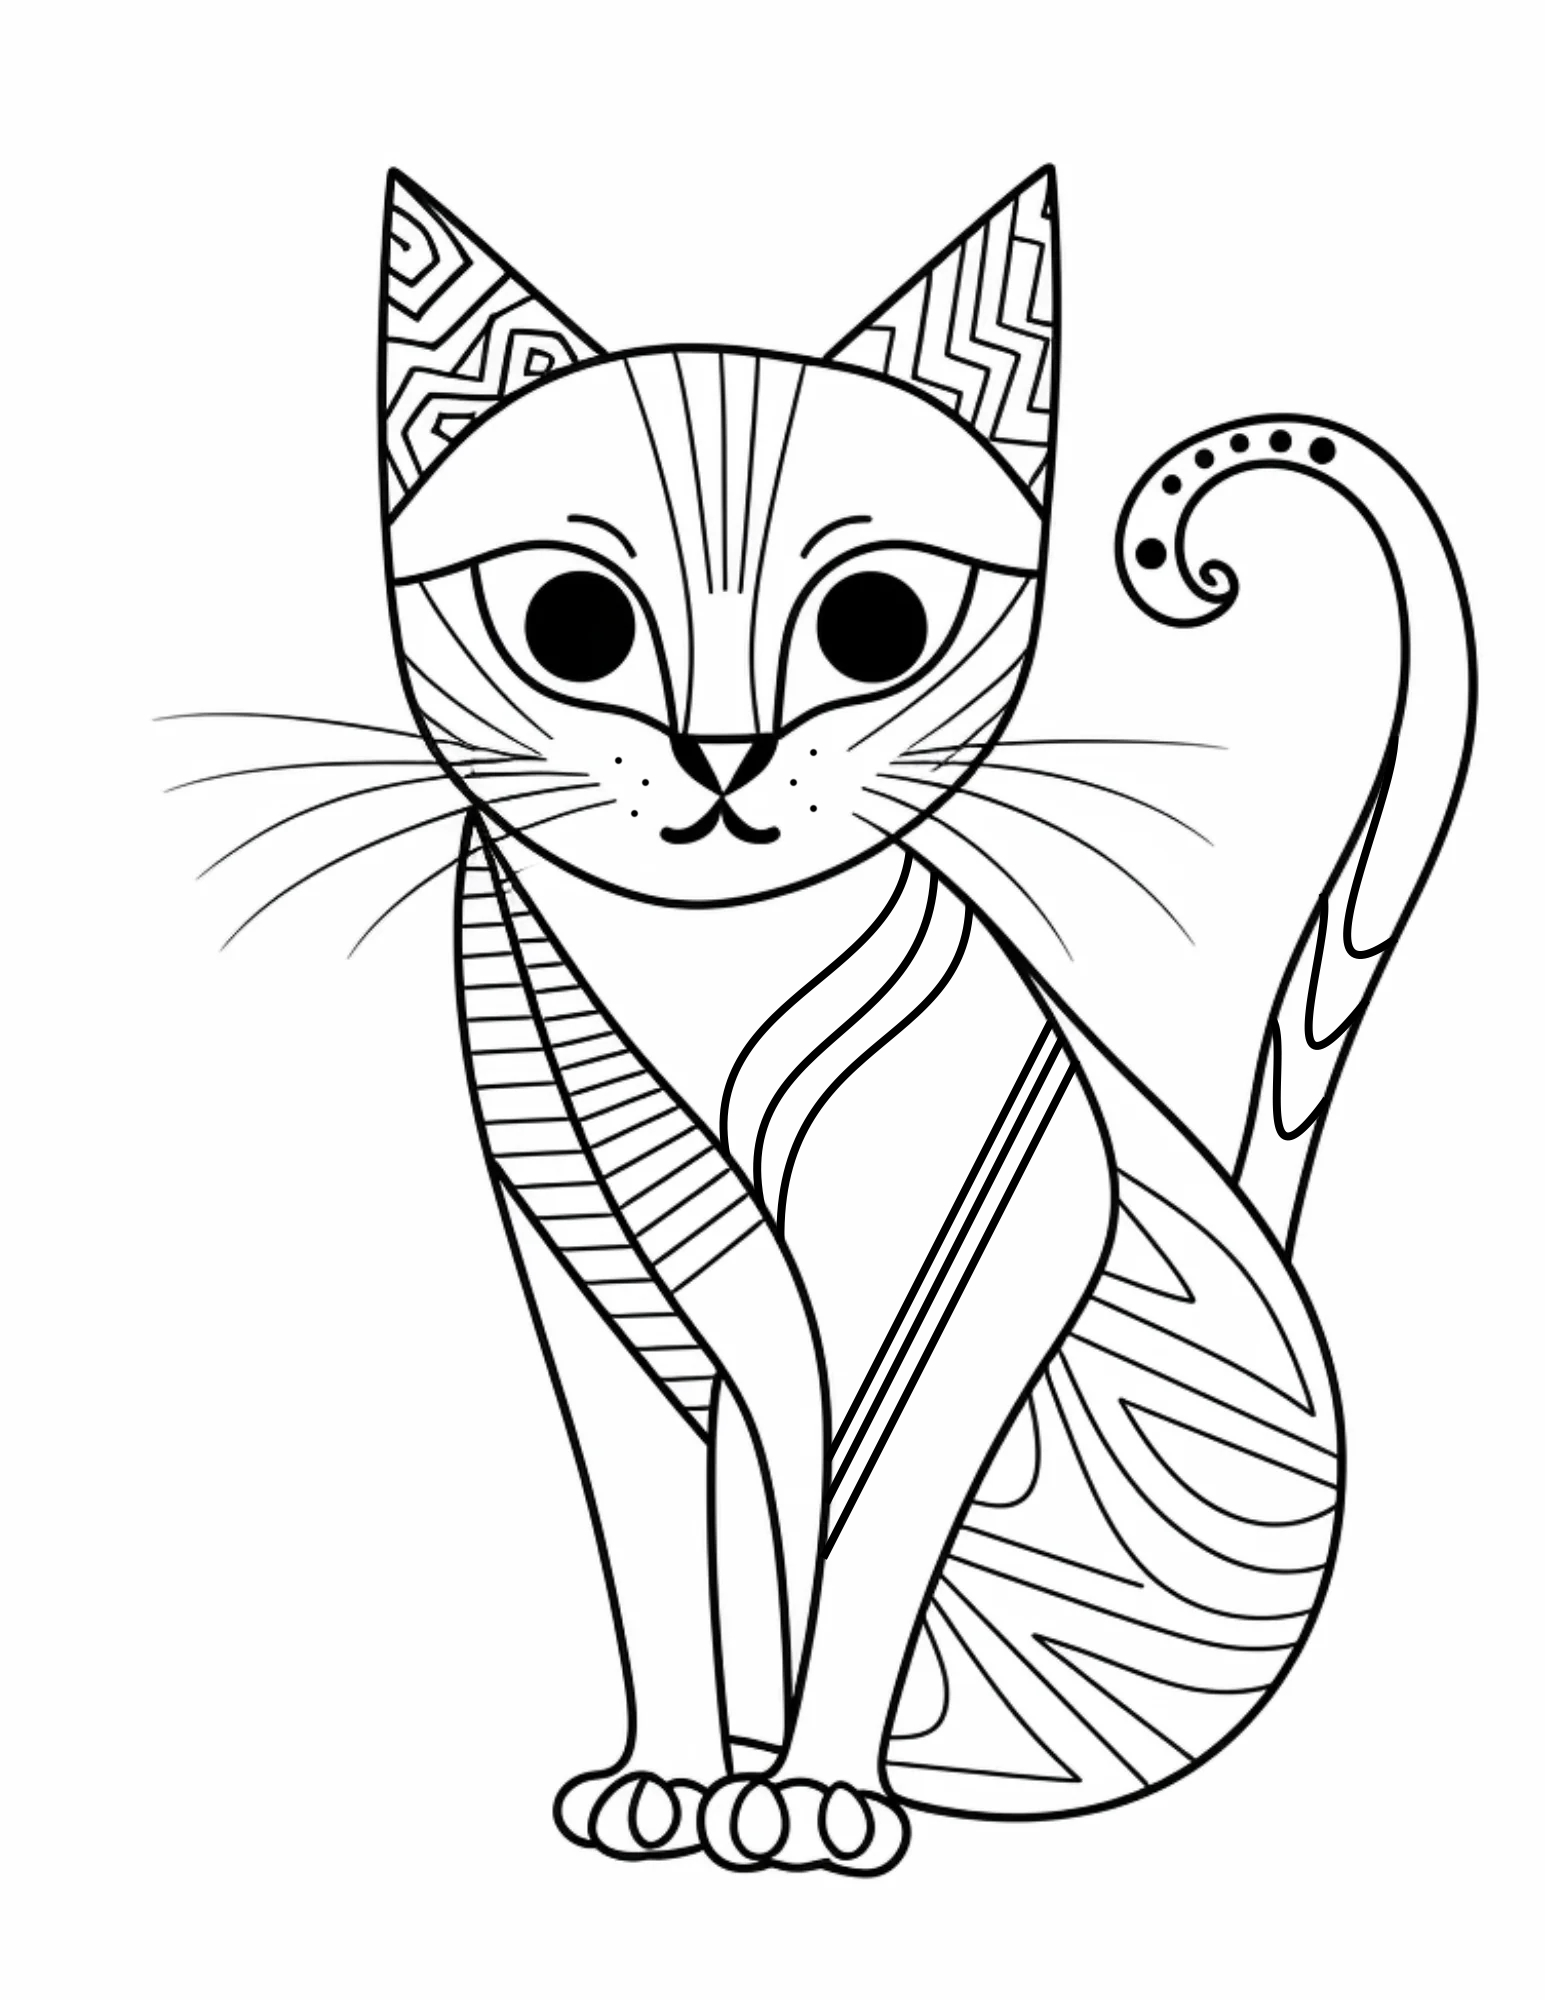 Раскраска Кот с узорами